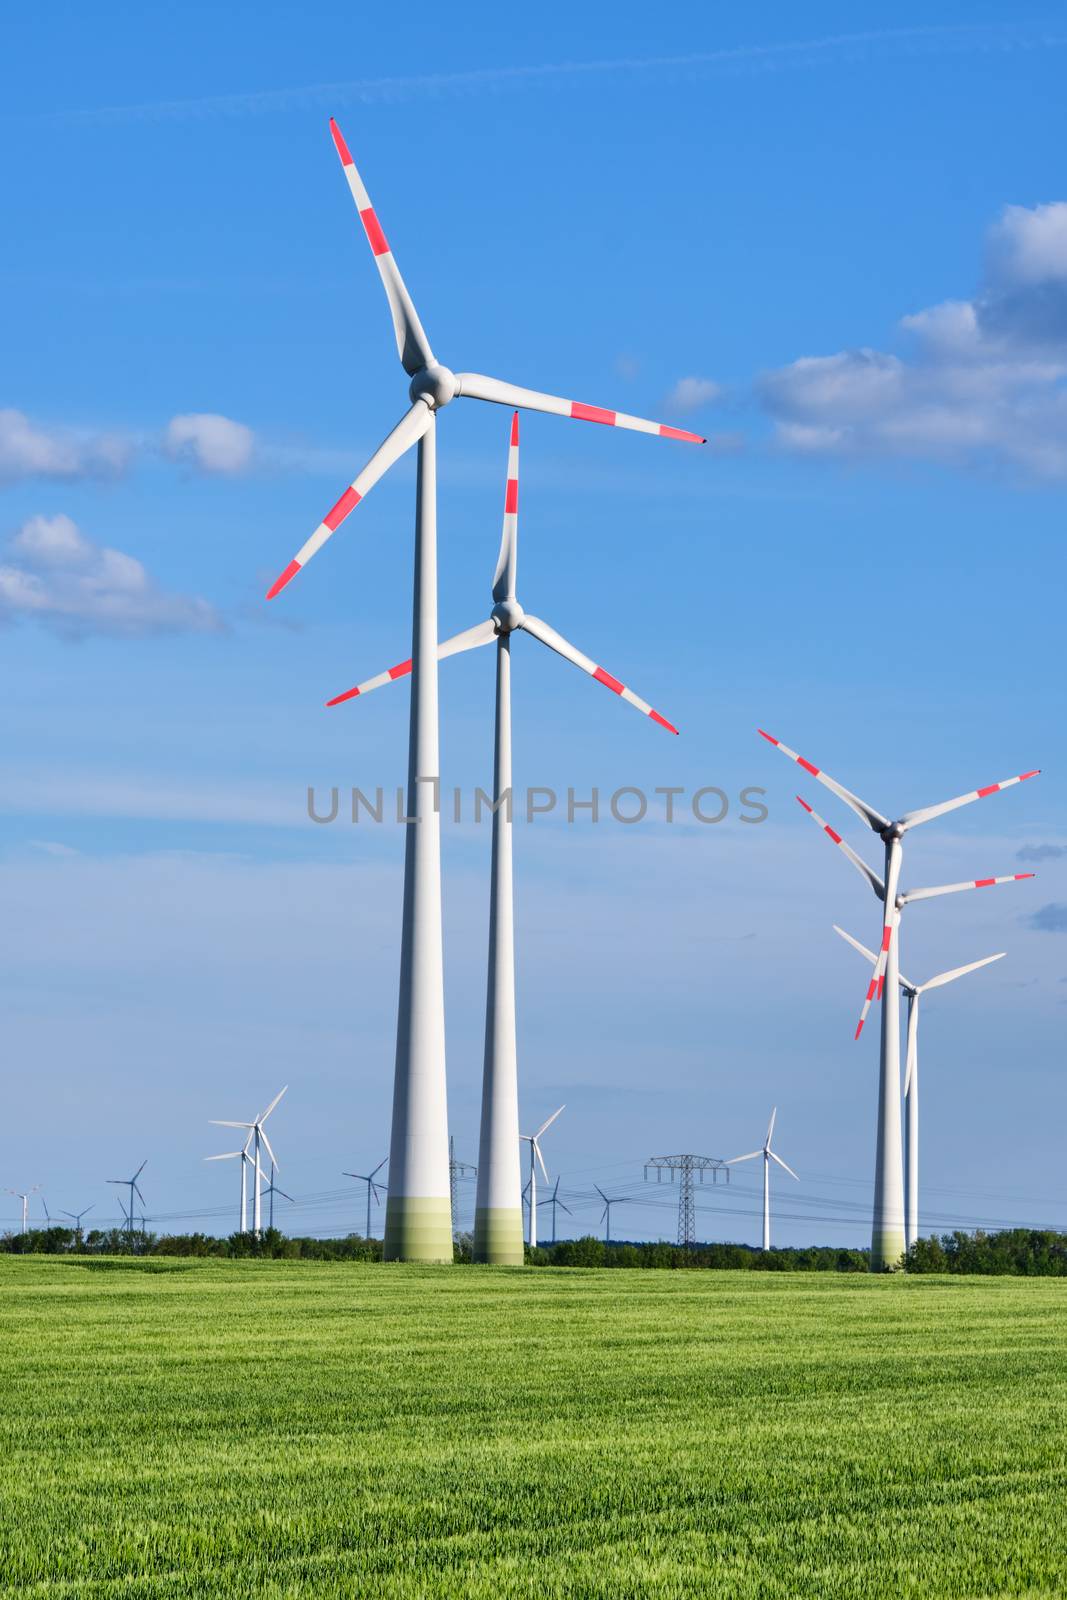 Wind turbines in a green corn field seen in Germany